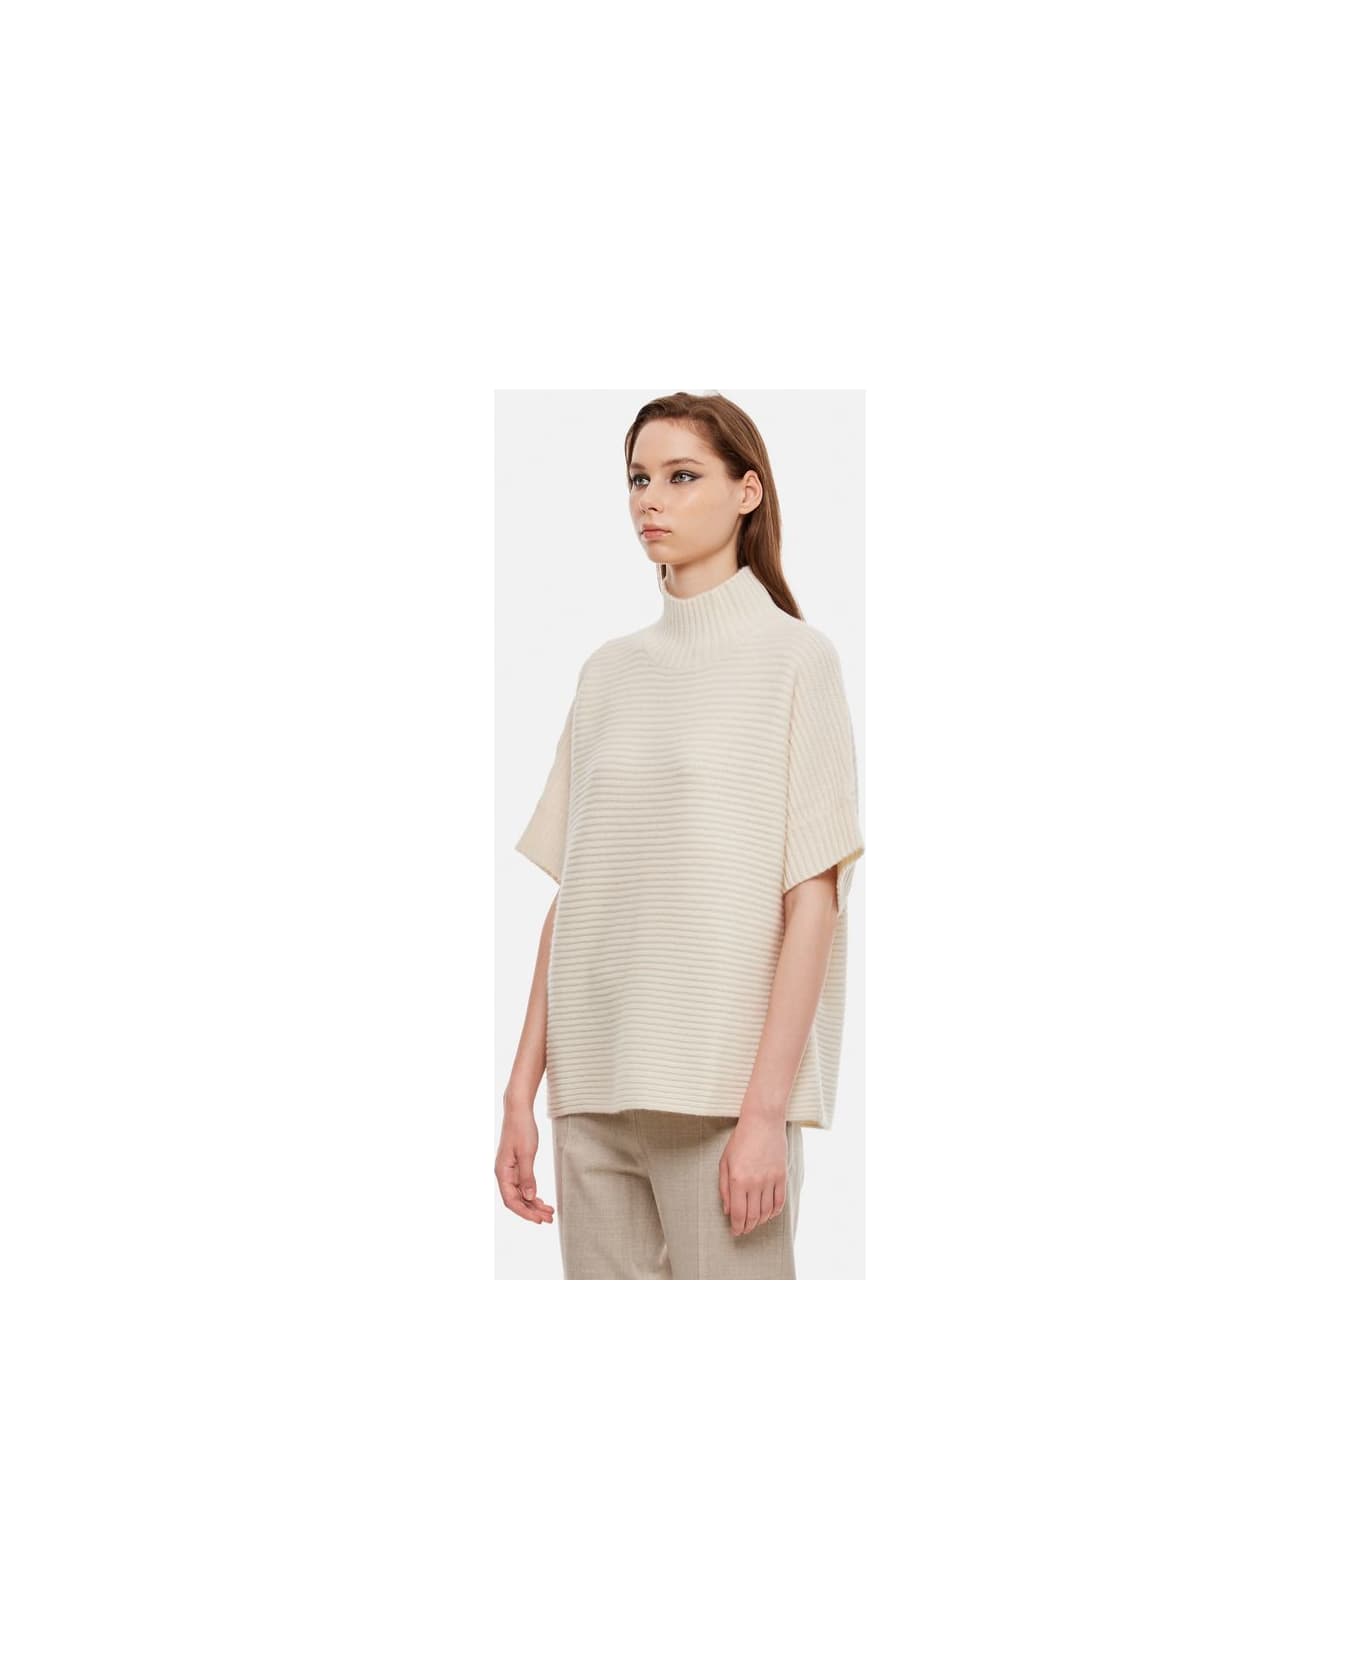 Max Mara Short Sleeves Turtleneck Sweater - White ニットウェア